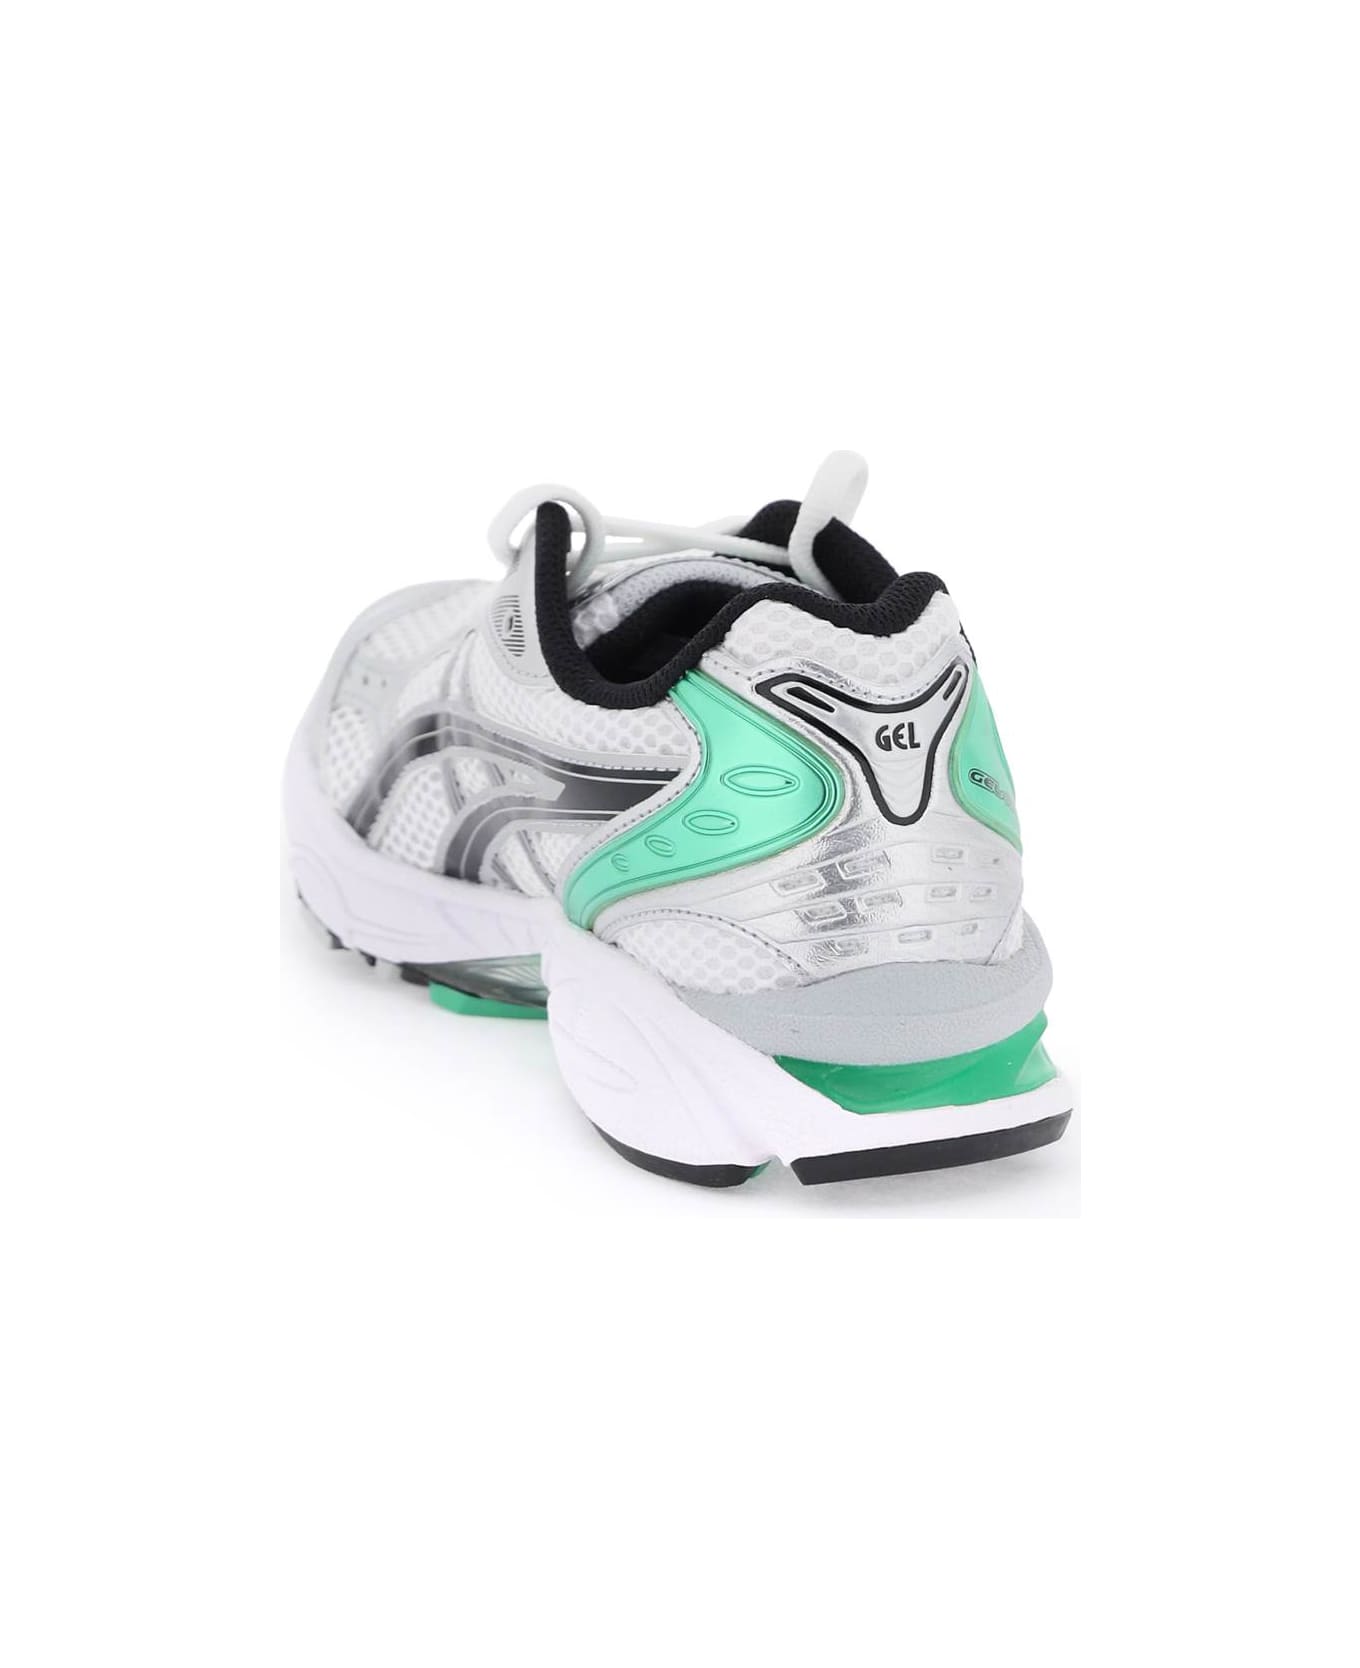 Asics Gel-kayano 14 Sneakers - White